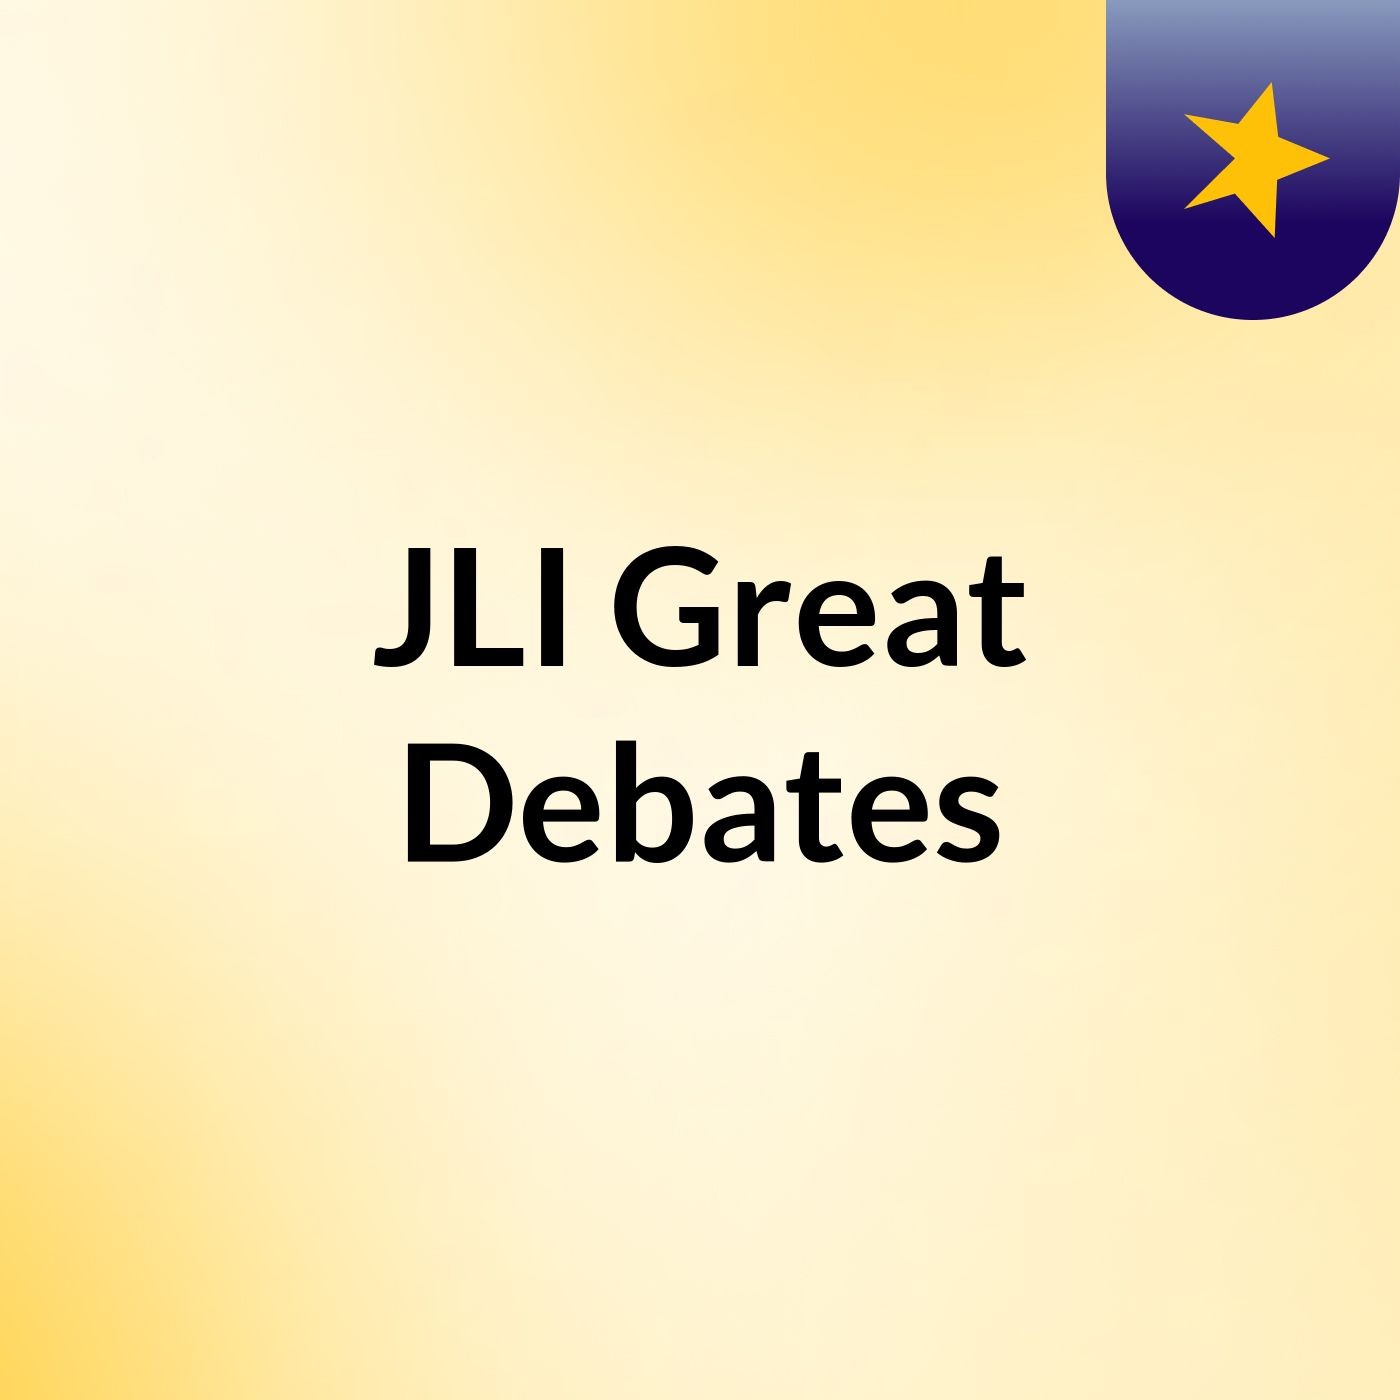 JLI Great Debates